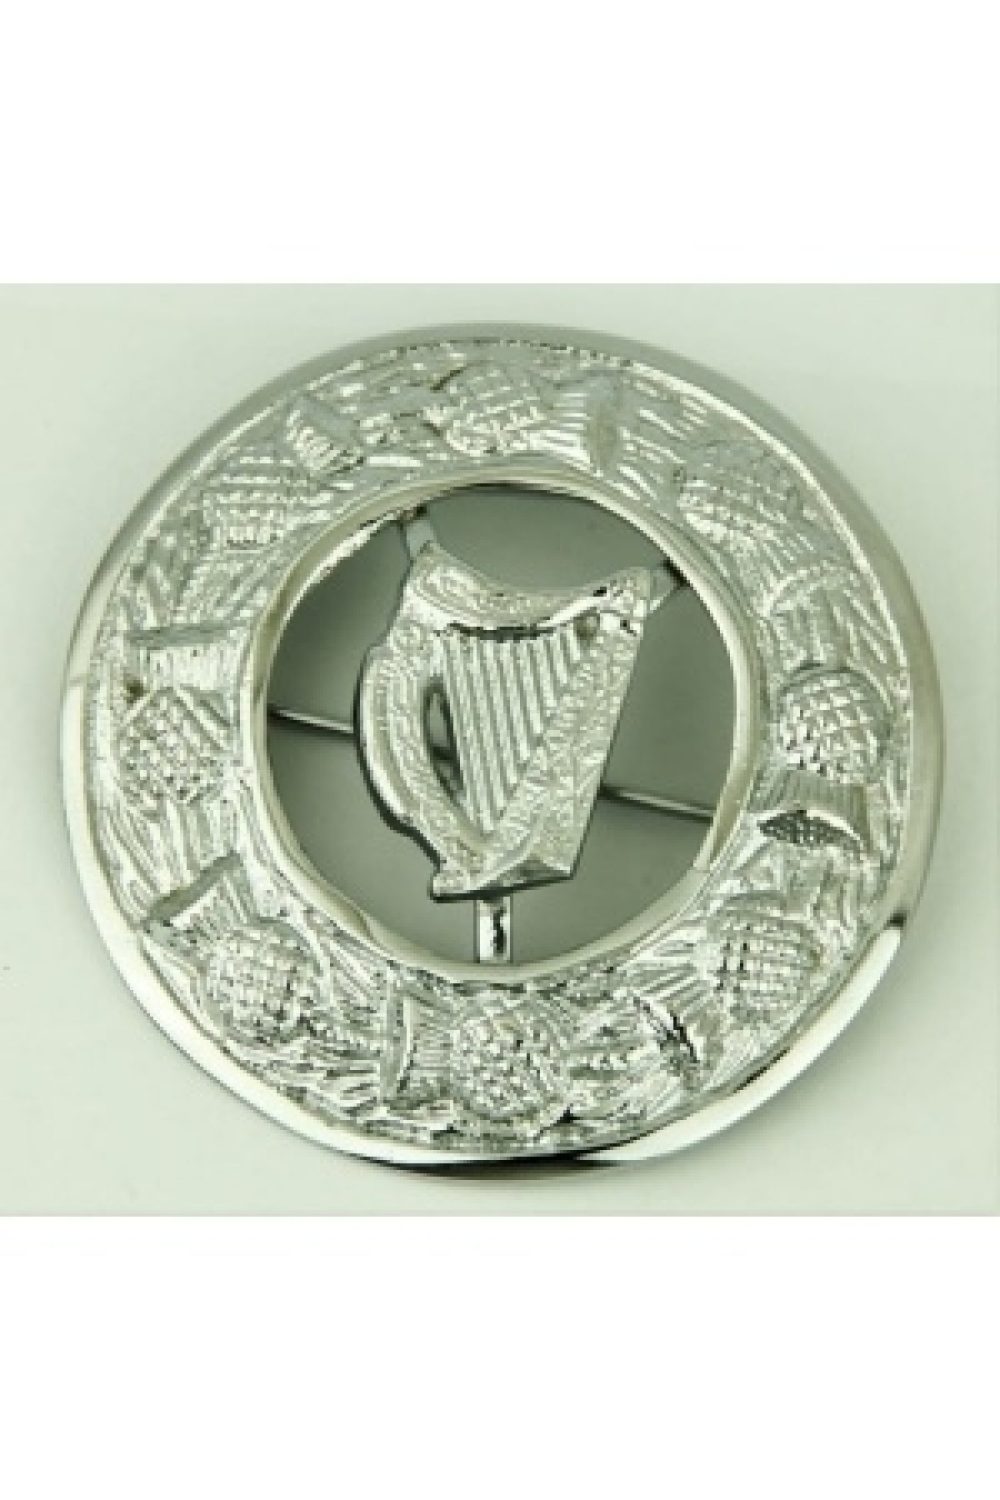 Irish harp brooch, irish brooch for sale, Fly plaid brooch